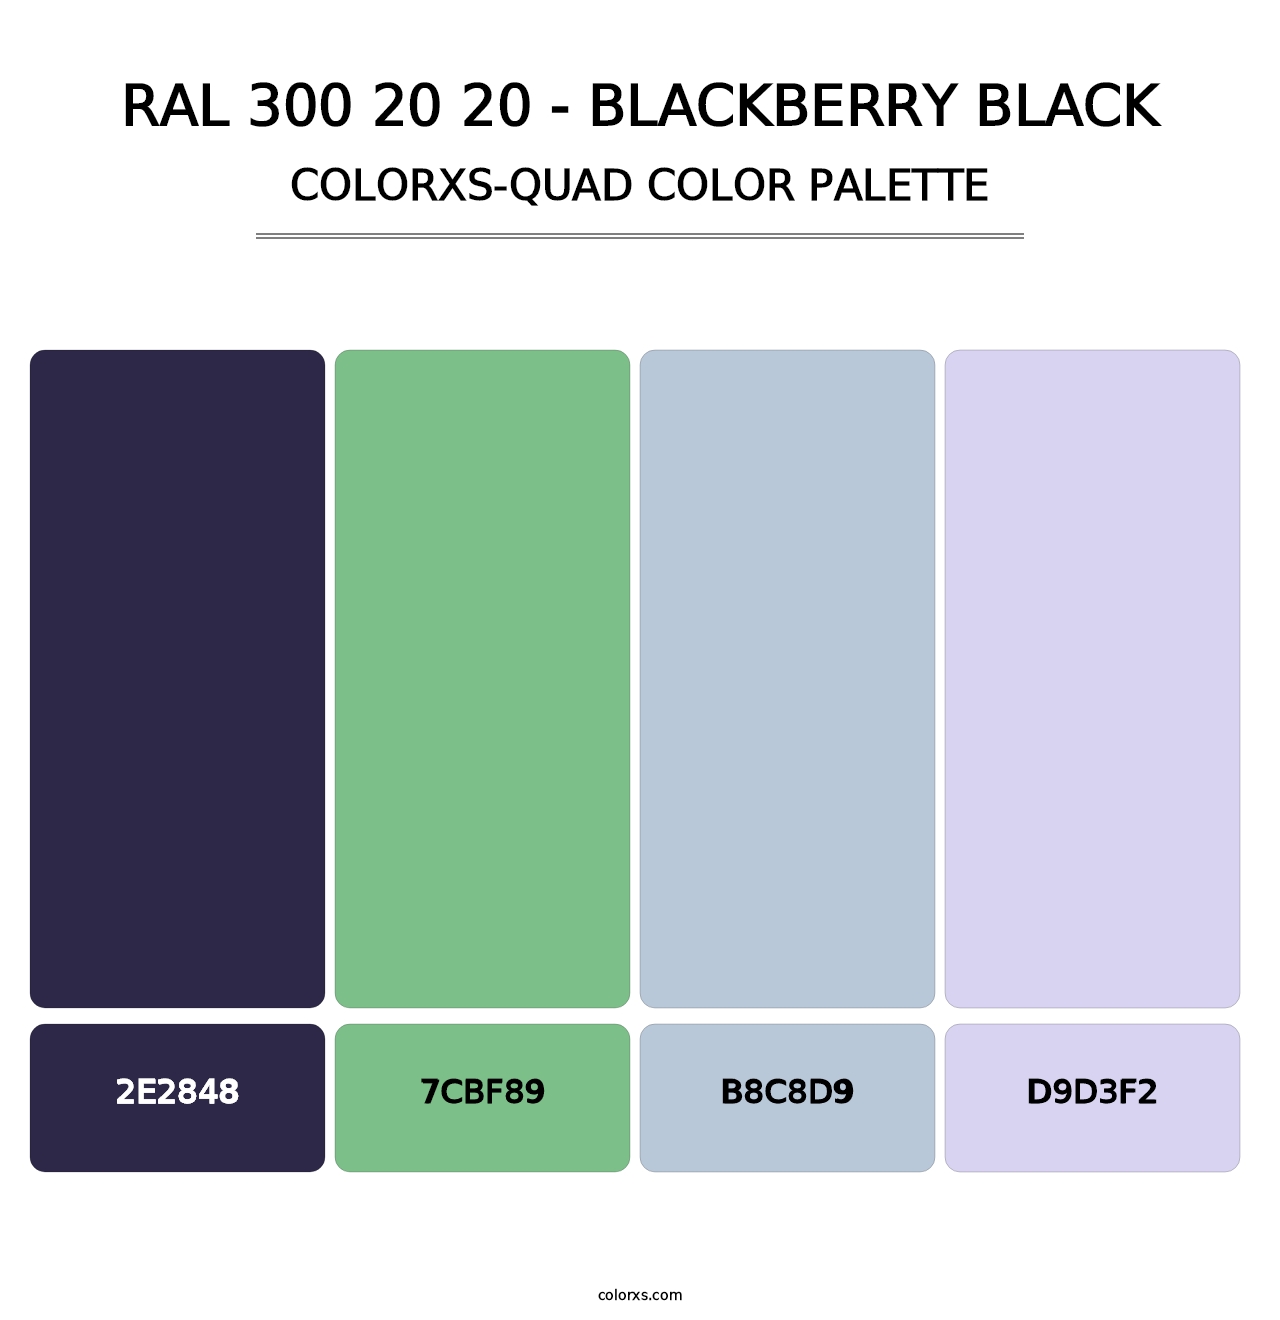 RAL 300 20 20 - Blackberry Black - Colorxs Quad Palette